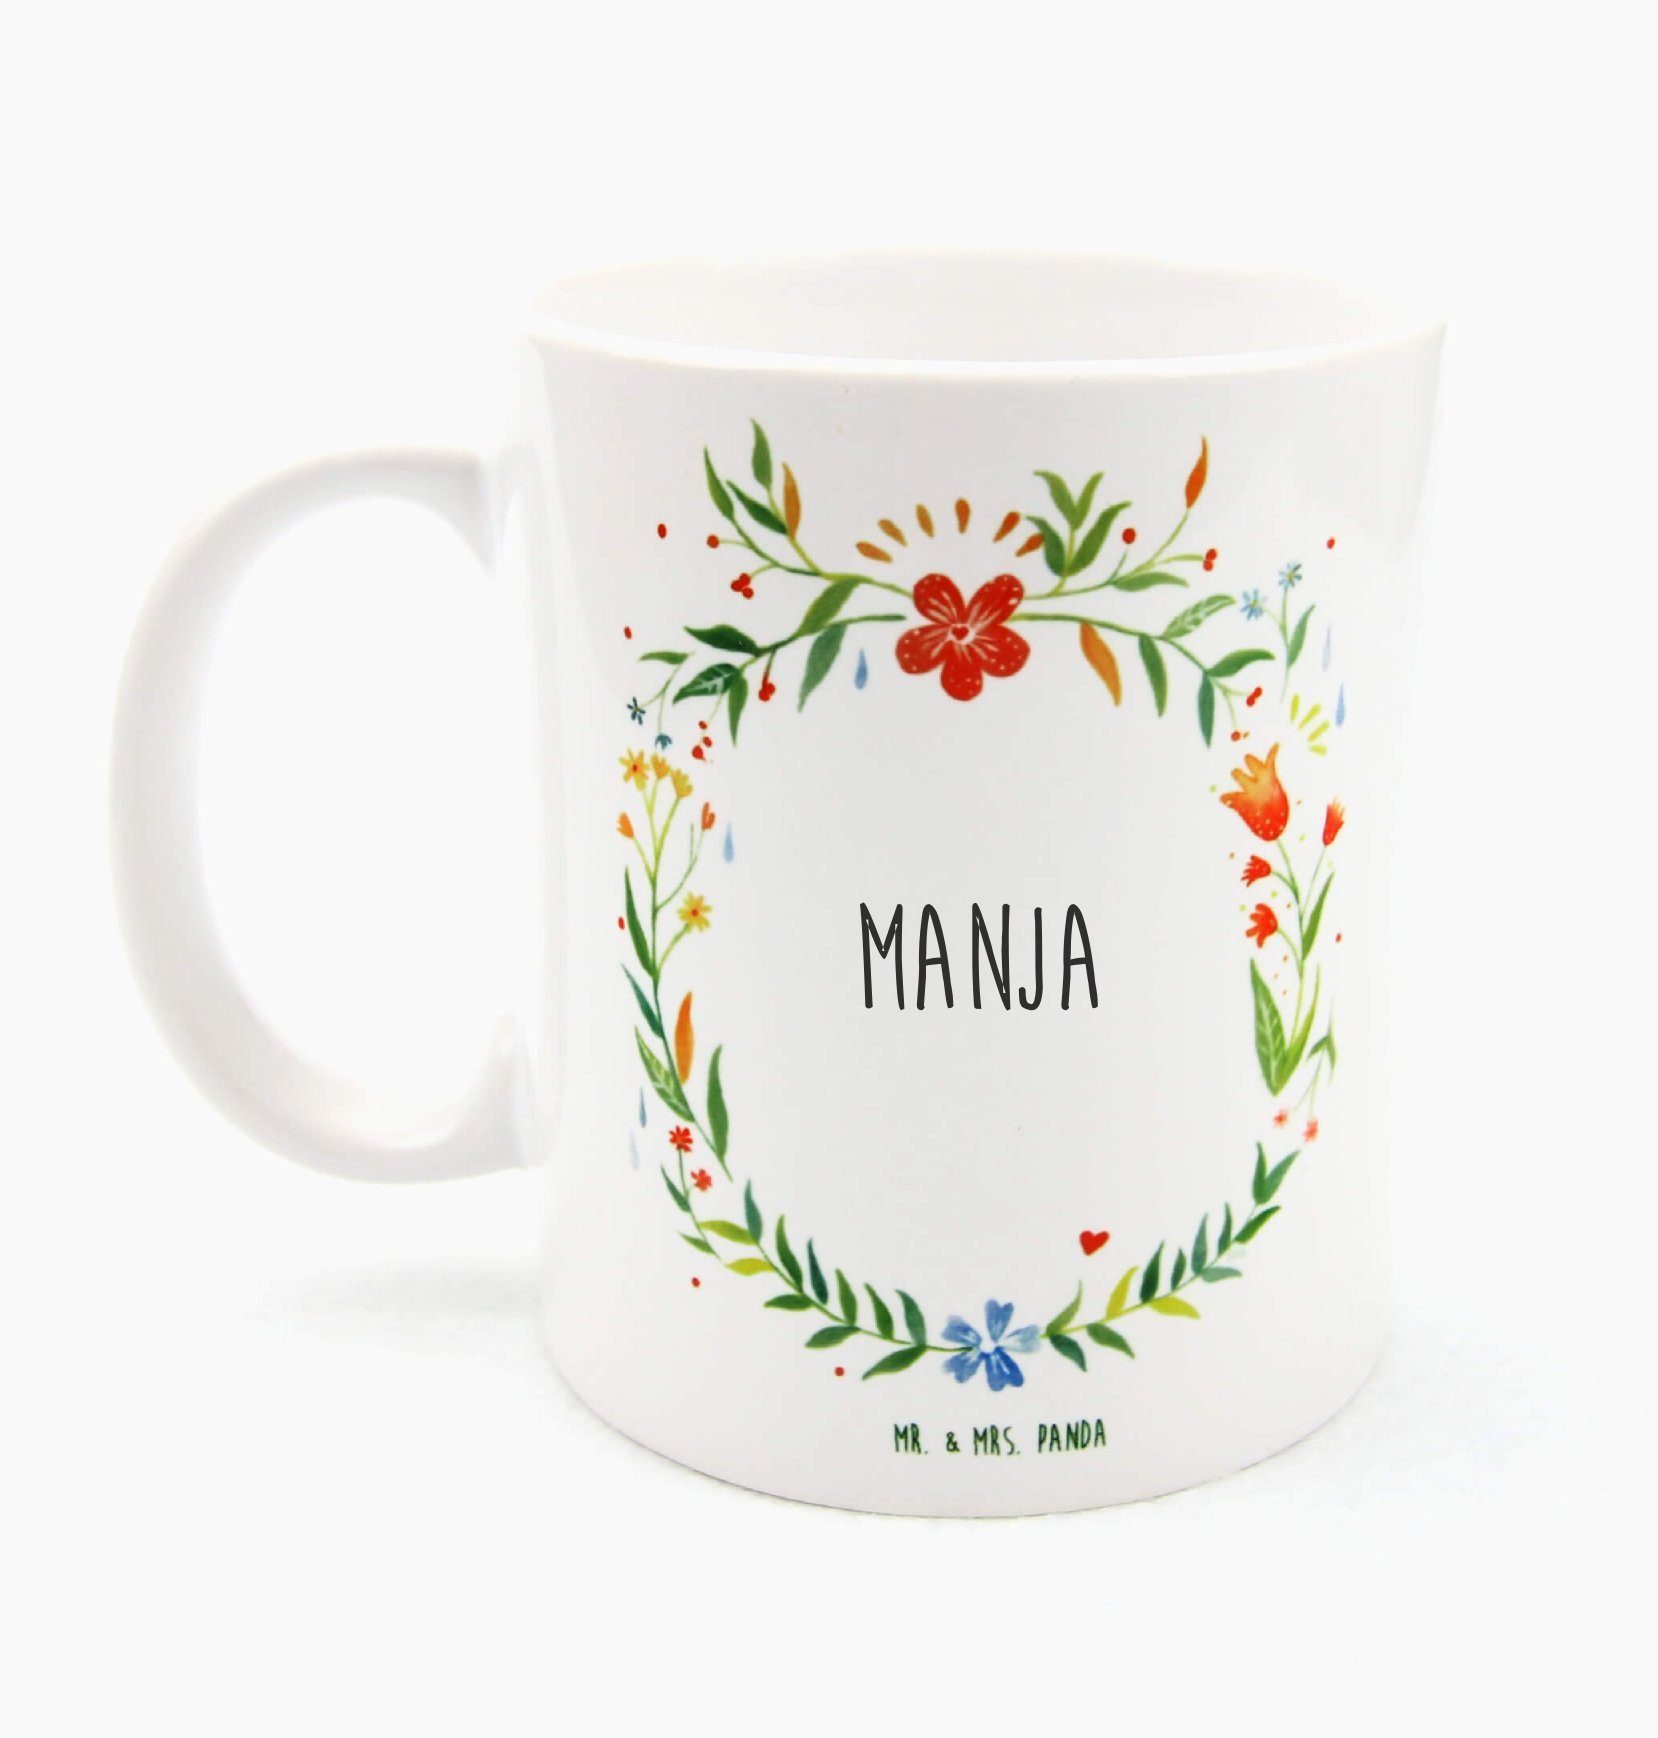 Mr. & Mrs. Panda Tasse Manja - Geschenk, Porzellantasse, Kaffeetasse, Kaffeebecher, Teetasse, Keramik | Tassen